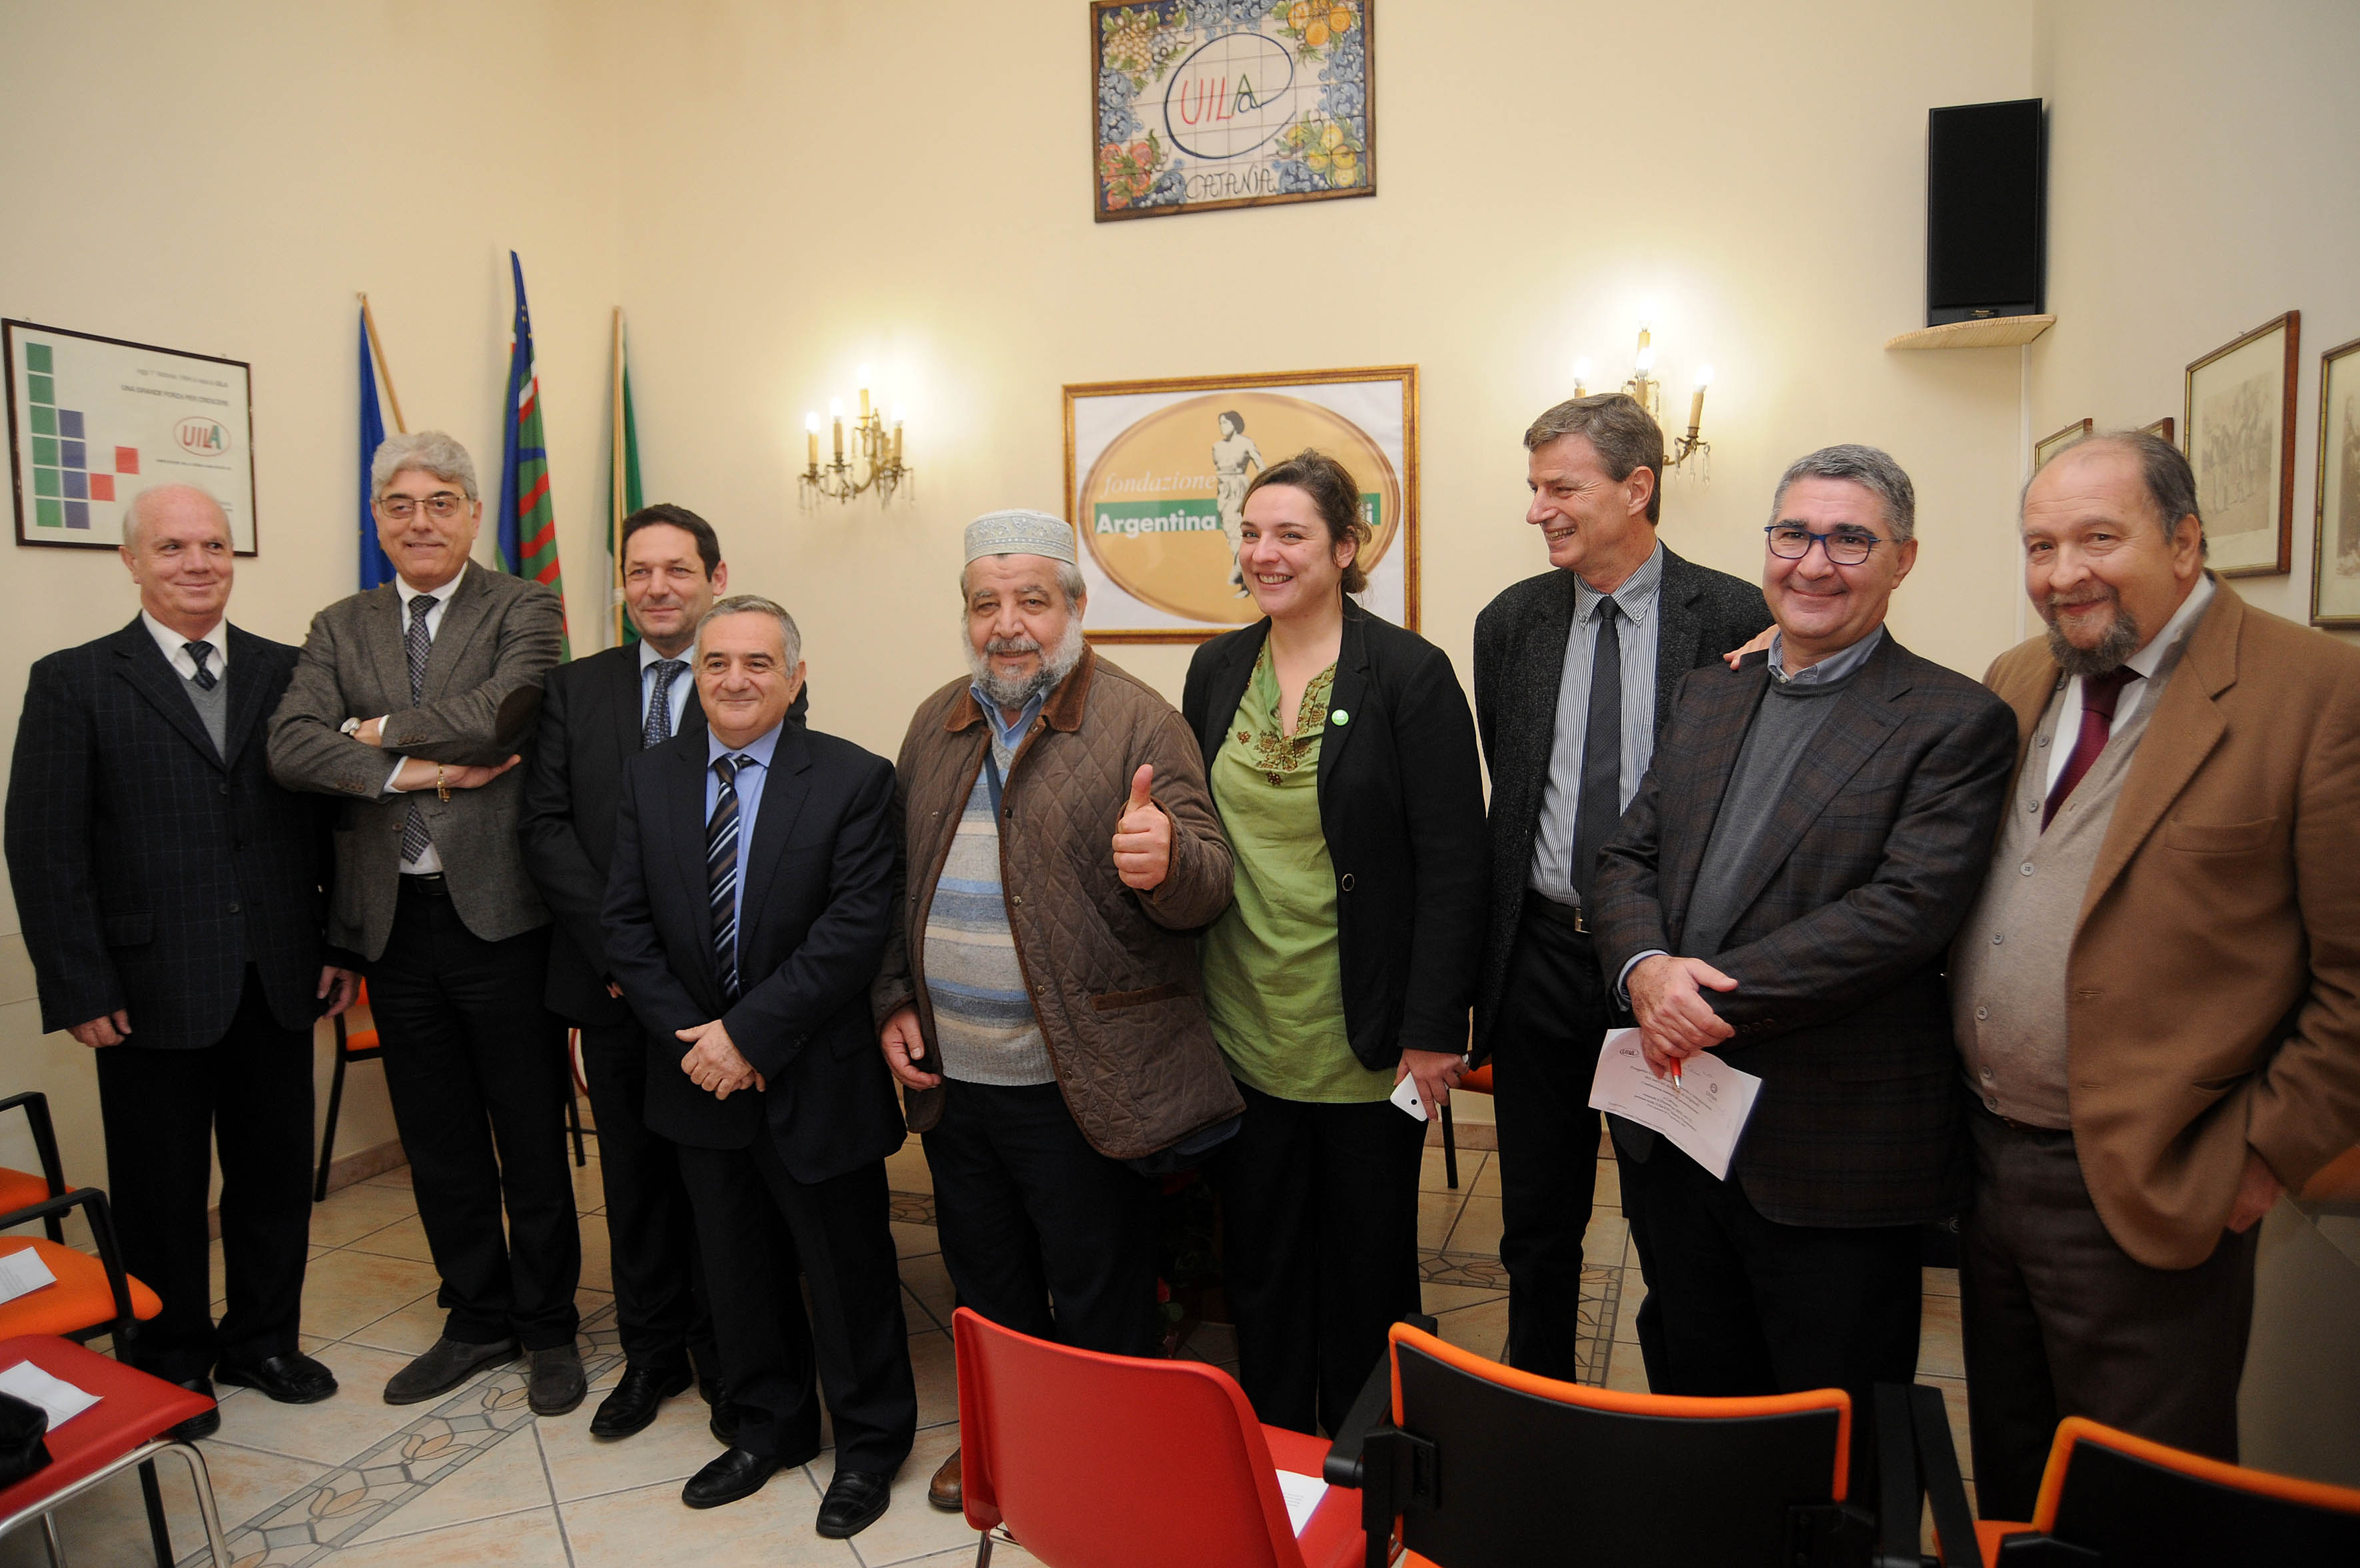 Catania, Uila e Oxfam unite per nuovo progetto di assistenza agli stranieri